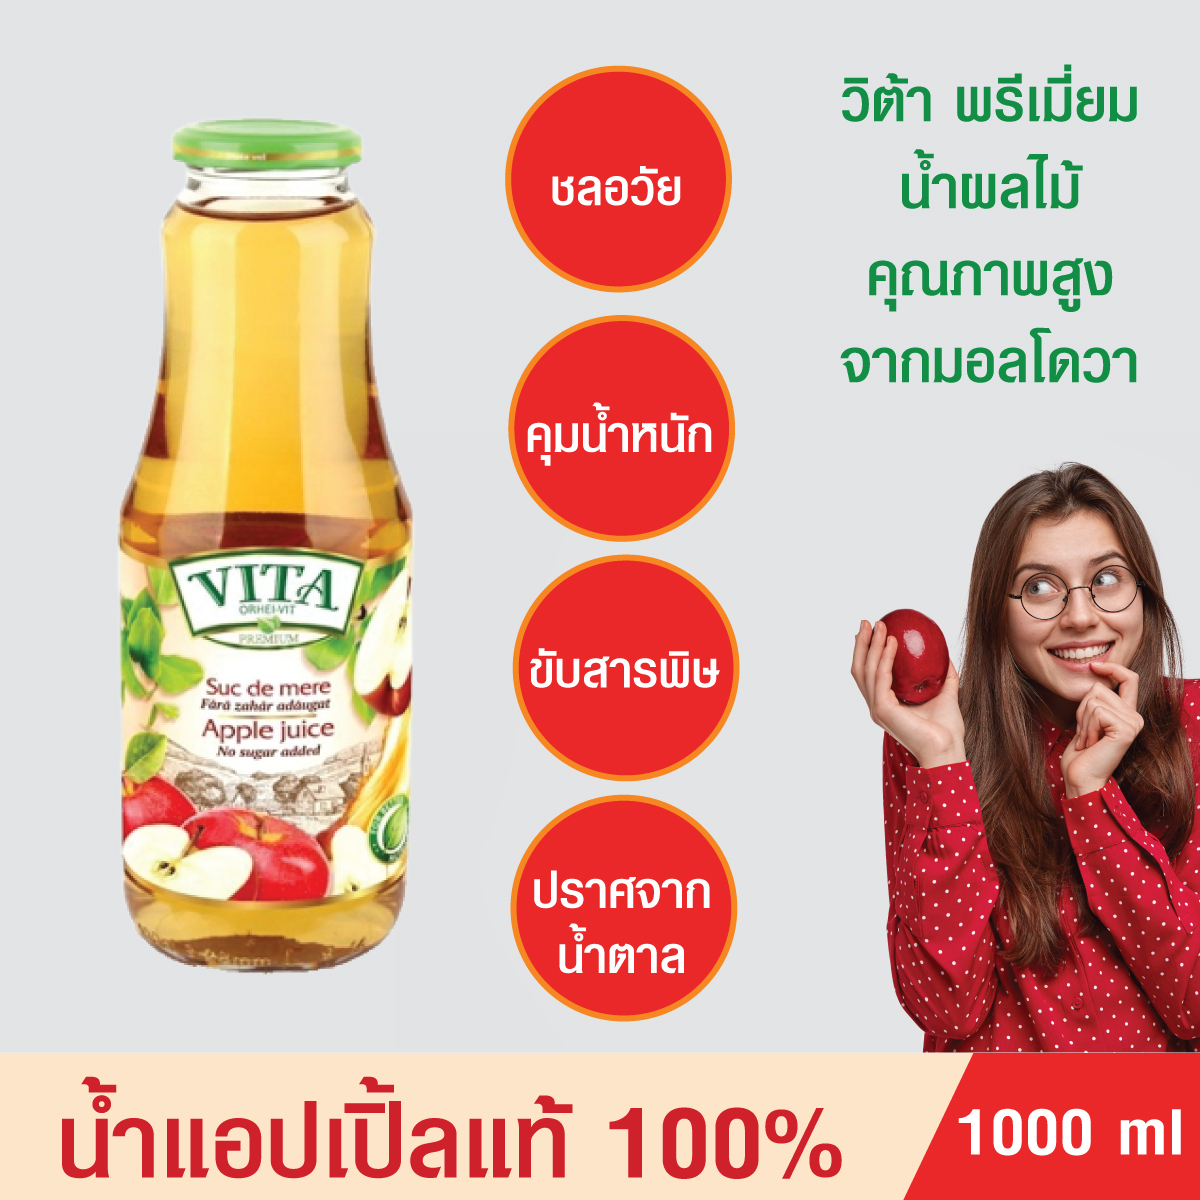 น้ำแอปเปิ้ลแท้ น้ำผลไม้ VITA  น้ำผลไม้แท้ น้ำแอปเปิ้ลแท้1000%Apple juice No sugar added น้ำผลไม้พรีเมี่ยมจากมอลโดวา ไม่มีน้ำตาล ขับสารพิษ บรรจุ1000 ml